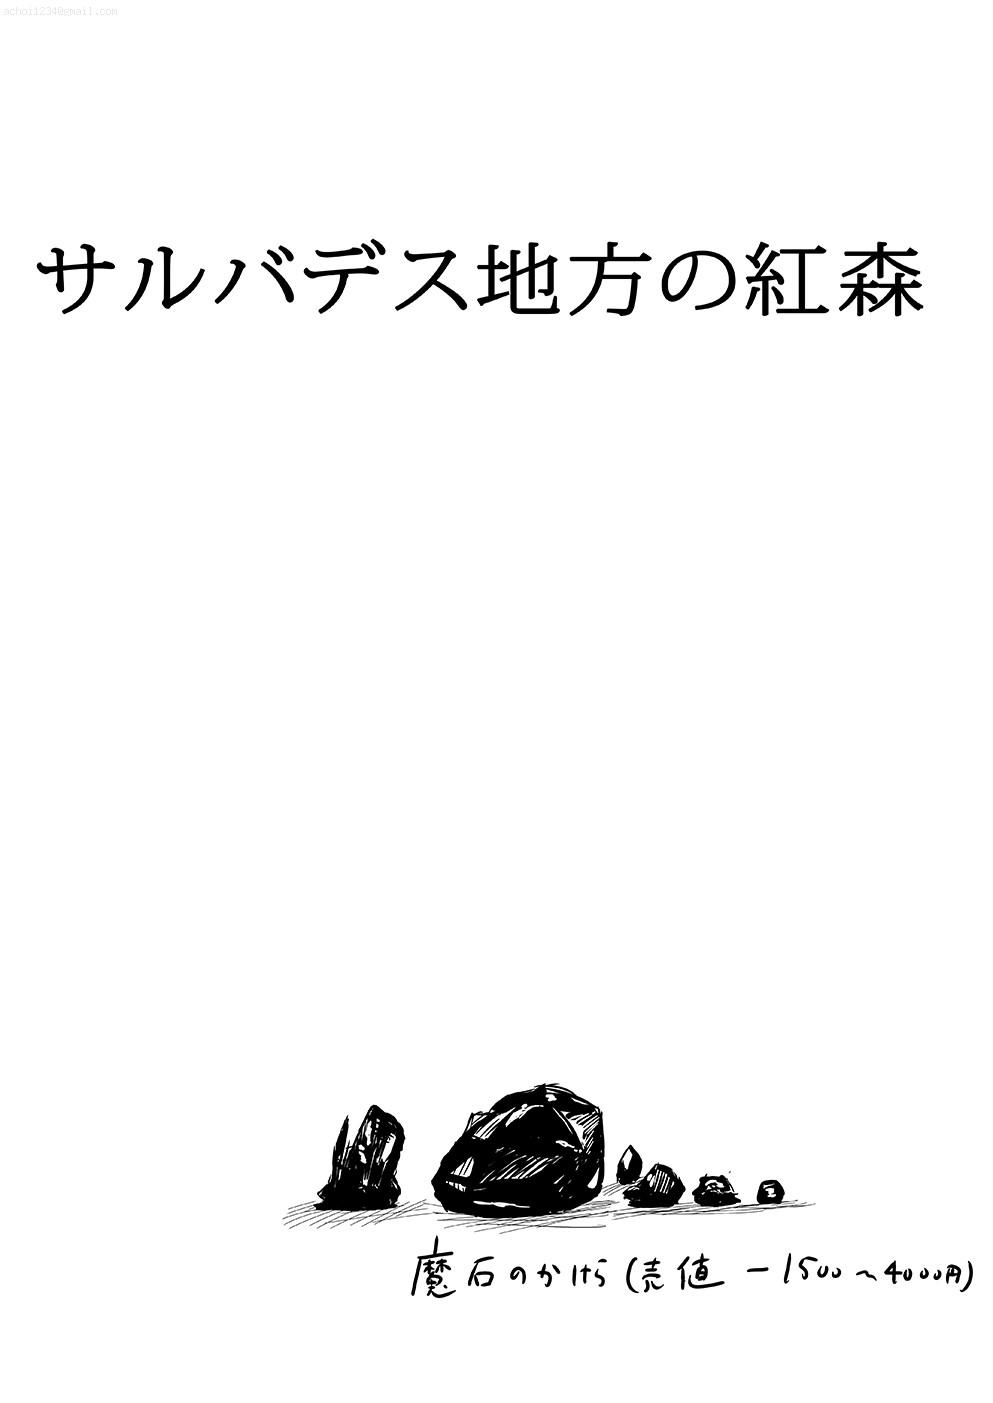 Mofos Sarubadesu Chihou no Akamori Namorada - Page 2